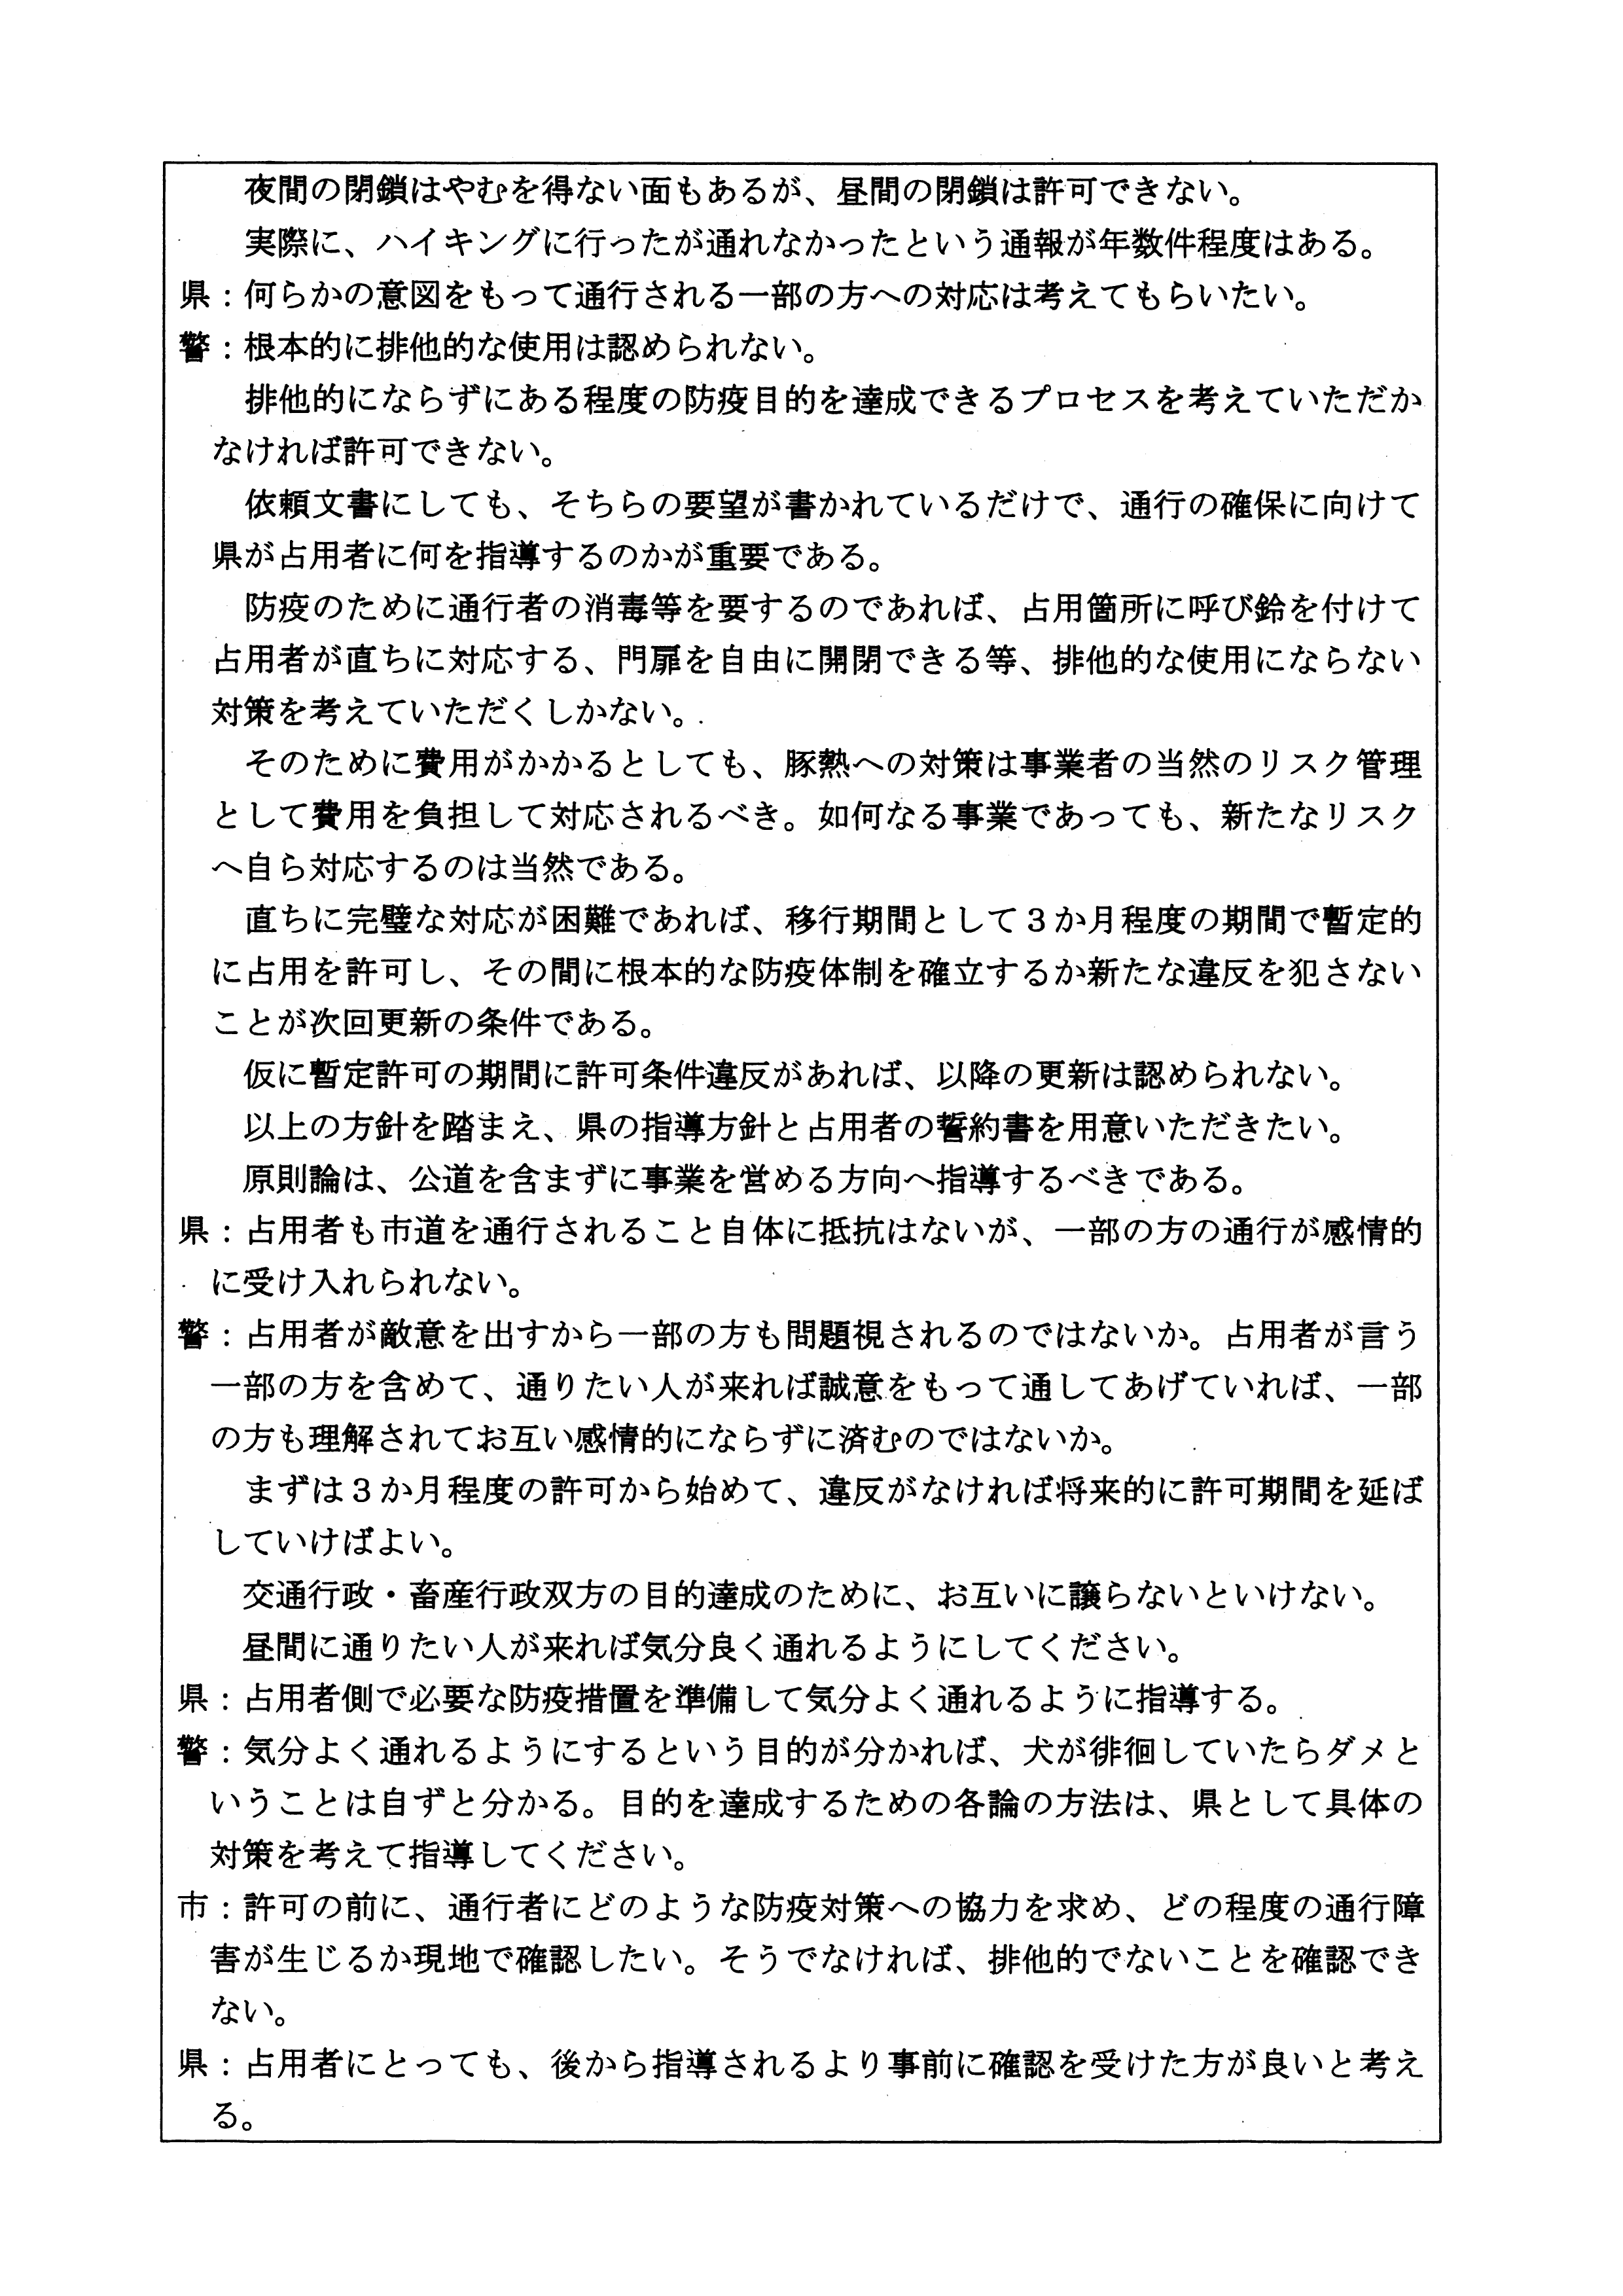 令和4年3月22日-（株）村田商店に対する市道（加2092号）占用許可の3者協議-03